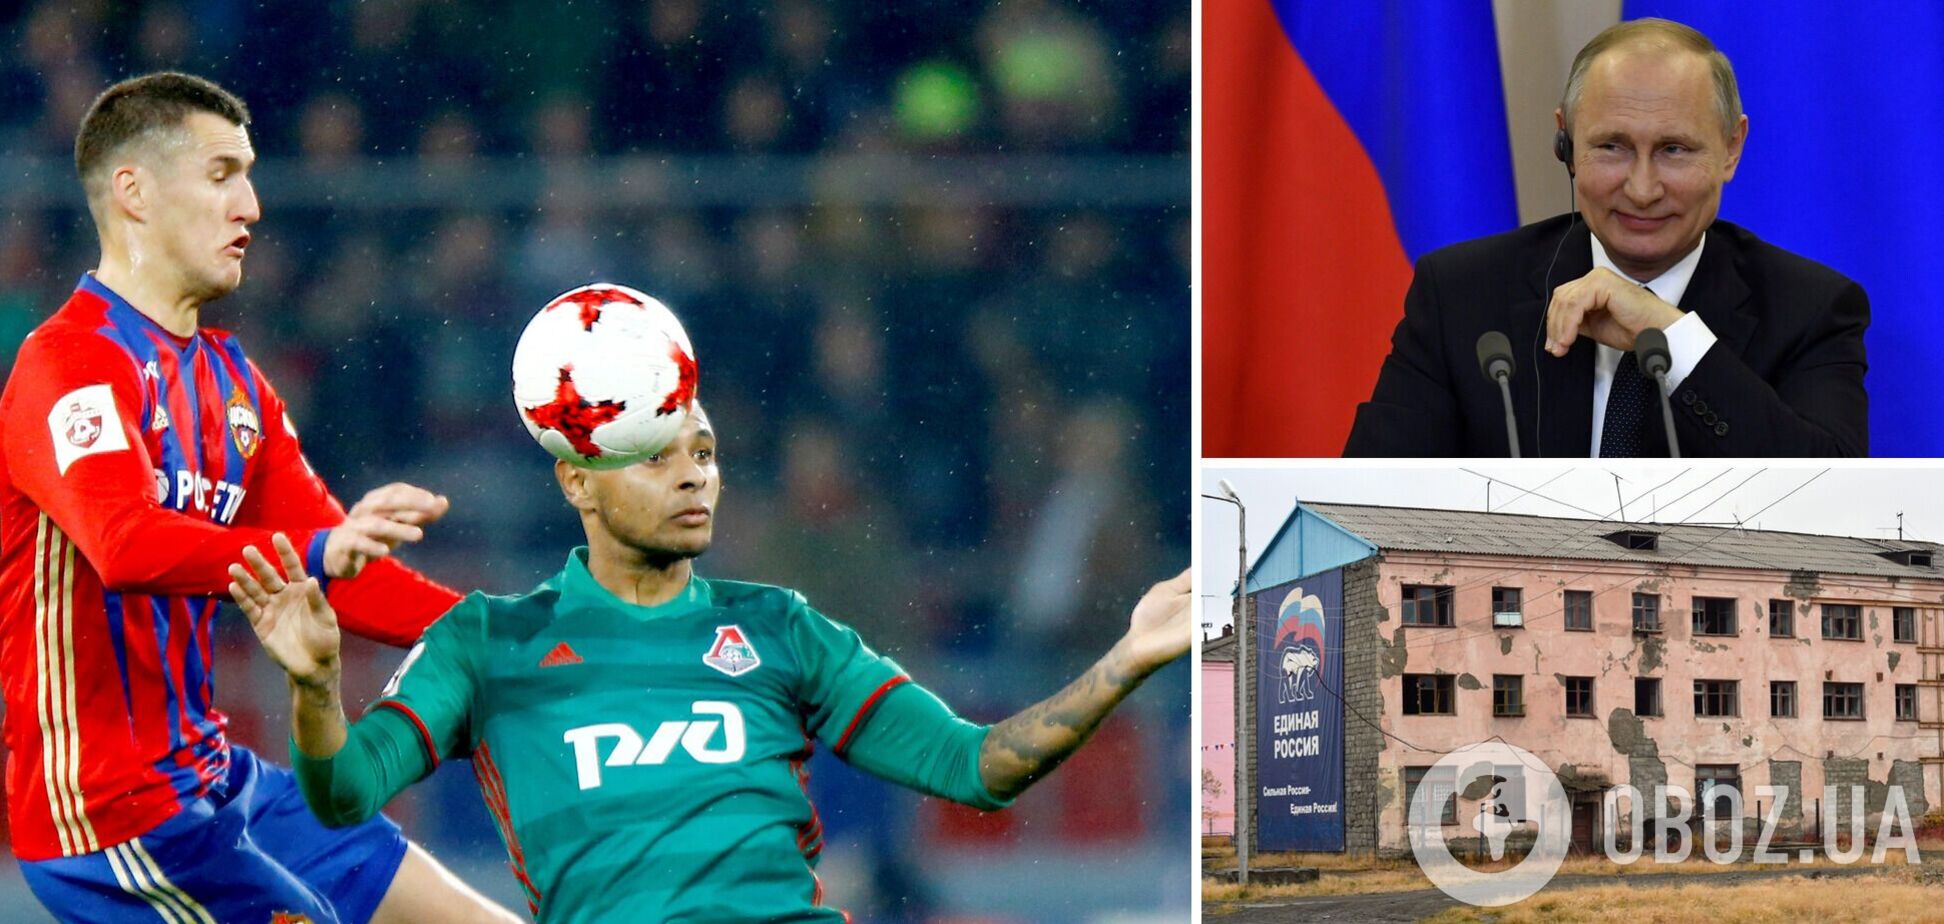 Уехавший в Бразилию экс-футболист сборной РФ рассказал, какая Россия 'прекрасная страна для жизни'